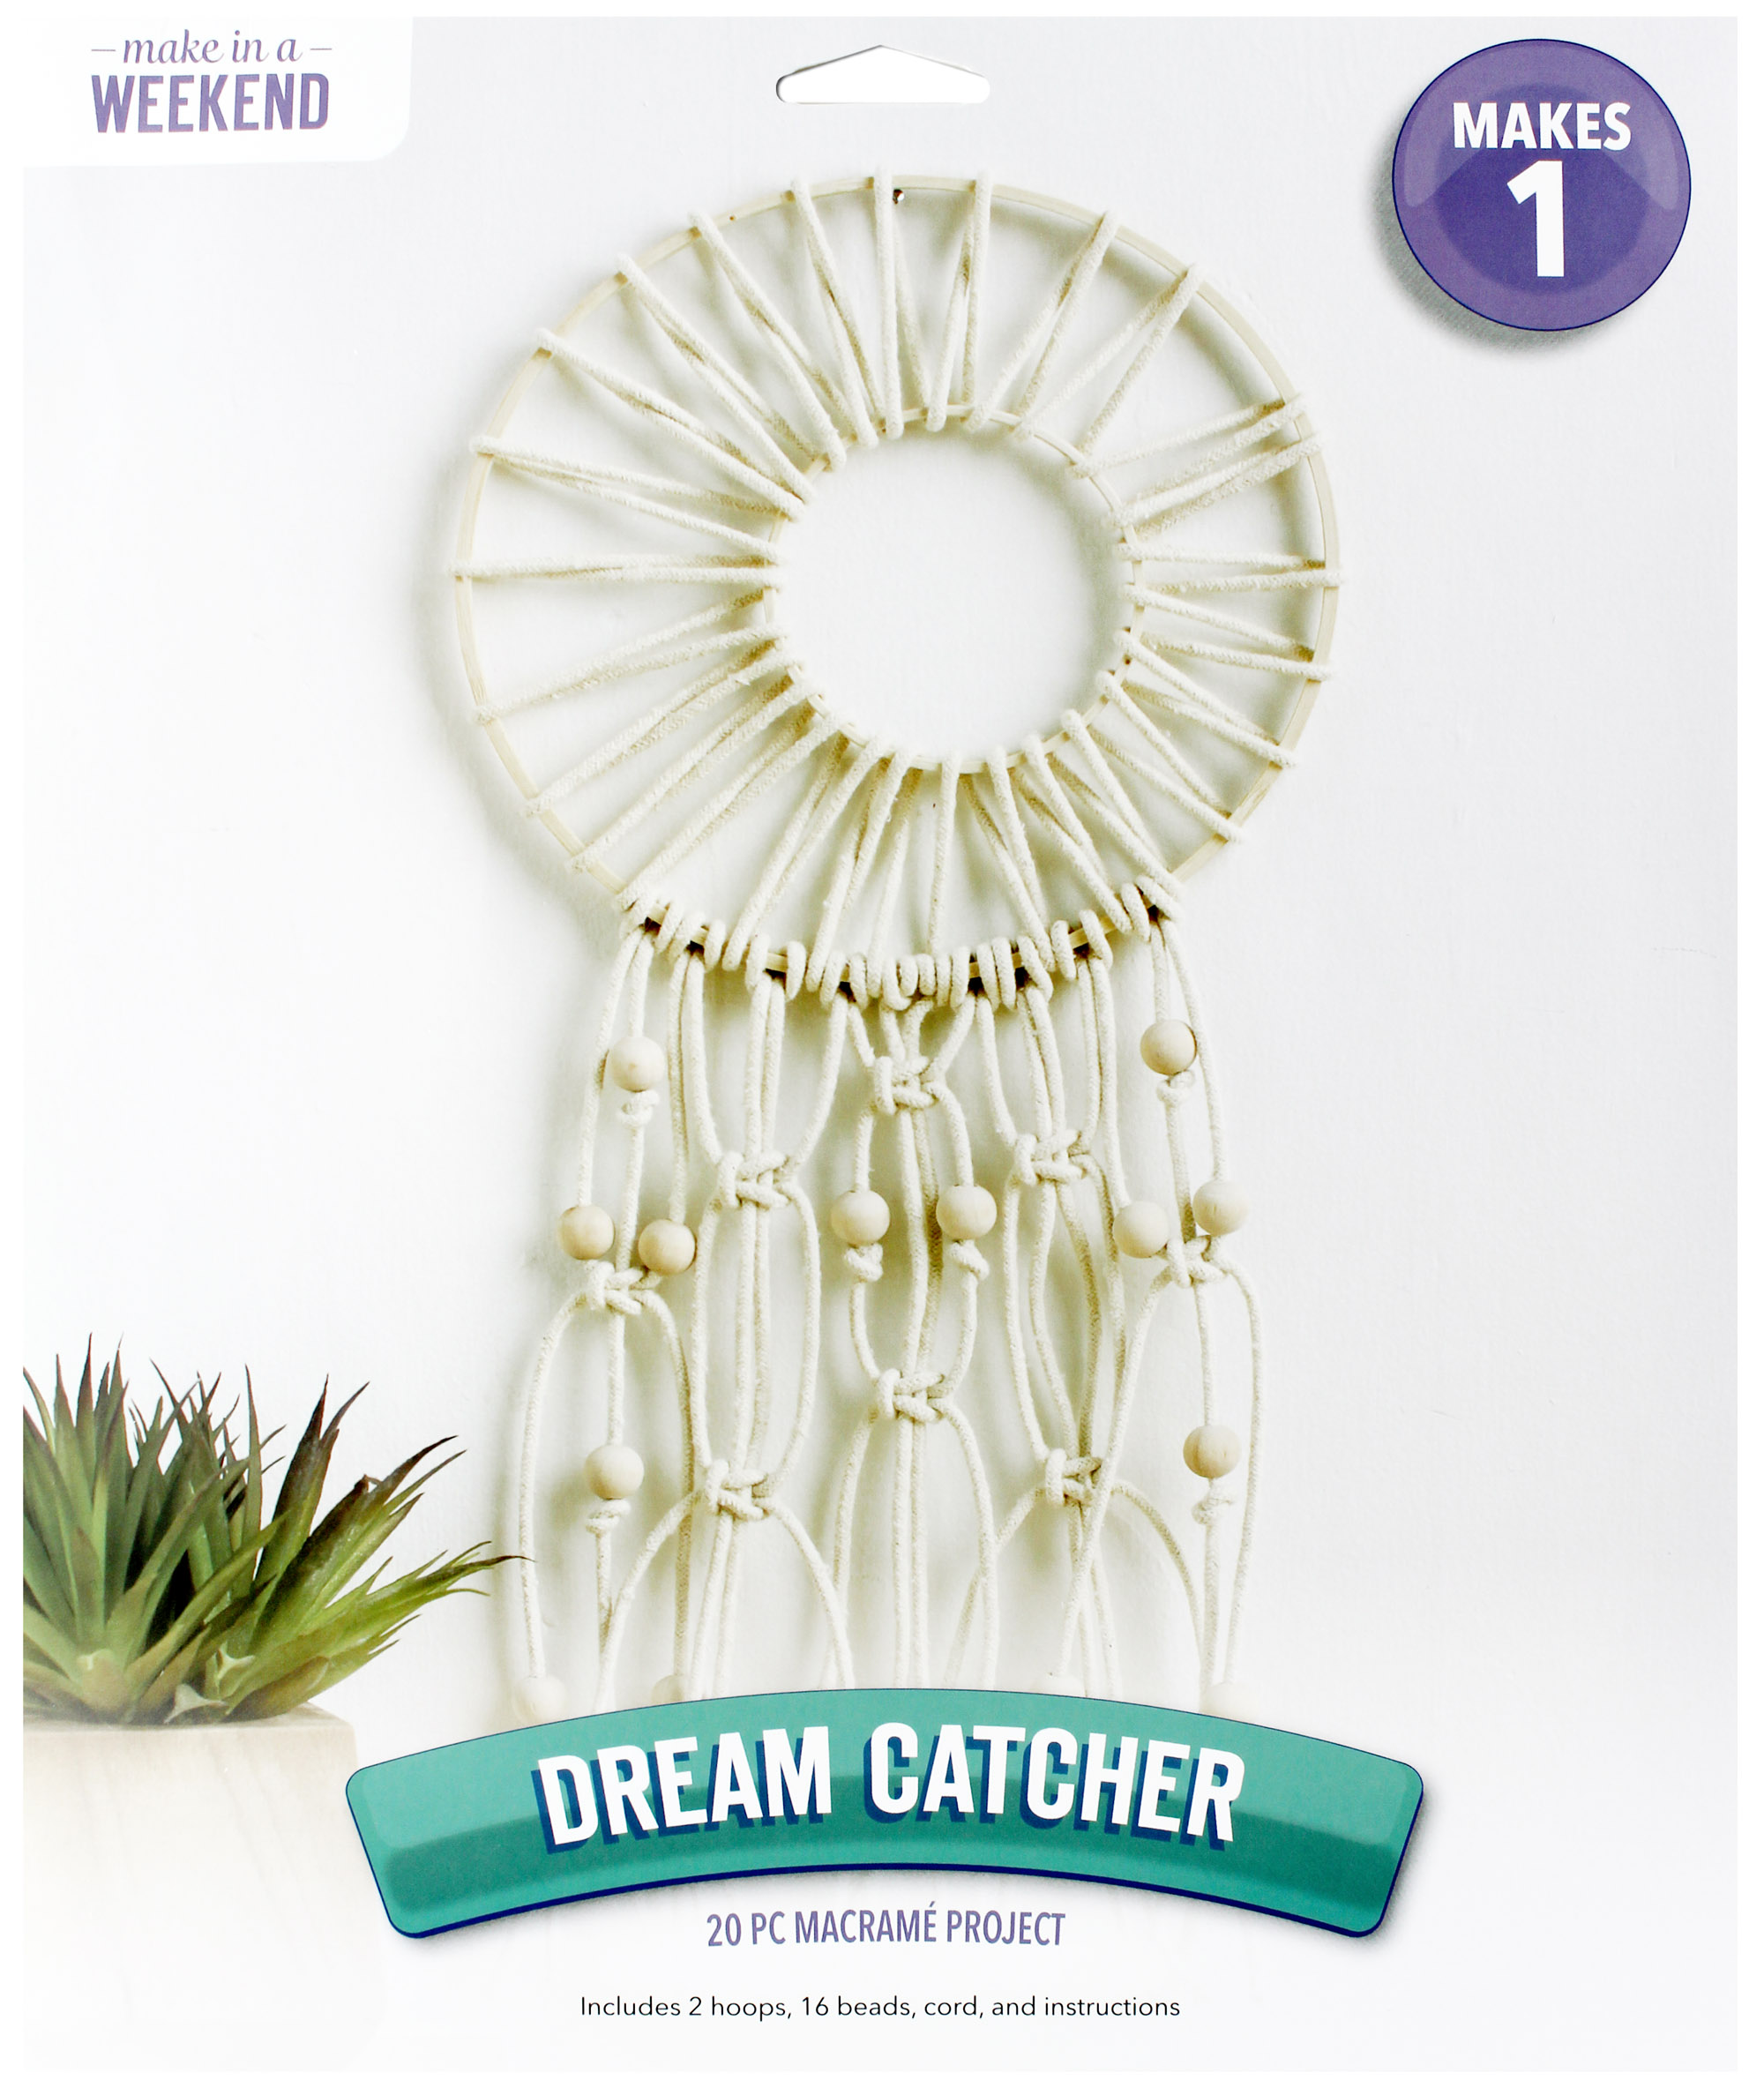 Dream Catcher Baby Quilt Kit